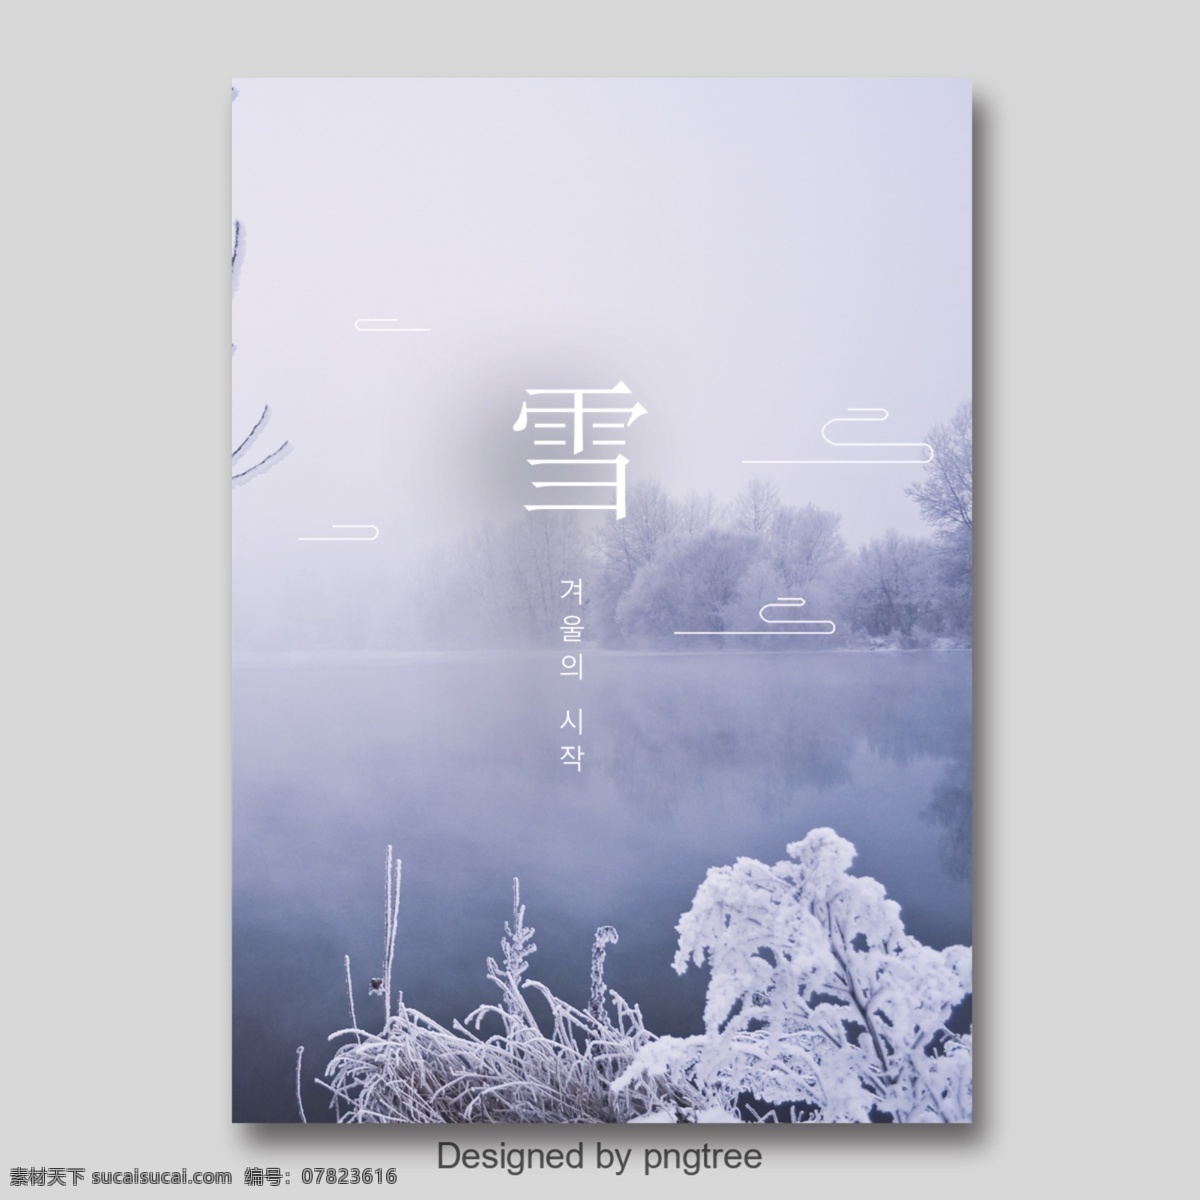 灰色 白色 简单 风景 墨水 冬天 海报 墨 冬季 朝鲜的 中文 英语 分支机构 空白 落下 落叶 雪